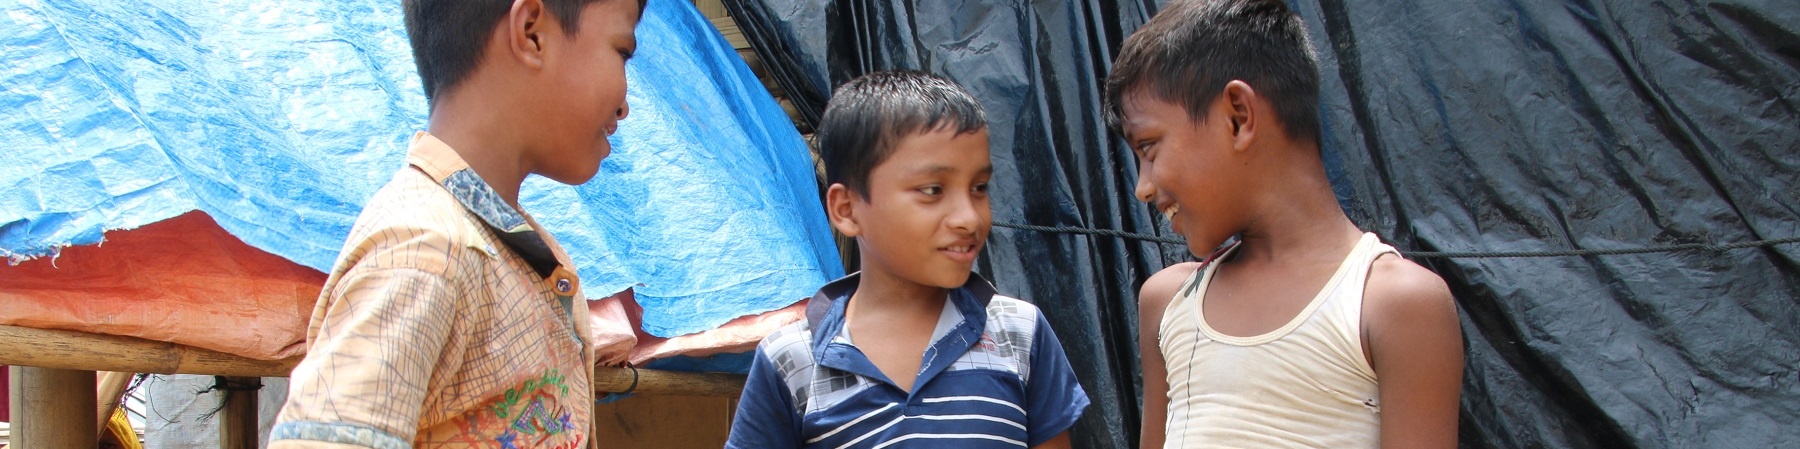 Tre bambini rohingya uno a fianco all altro in piedi parlano tra loro